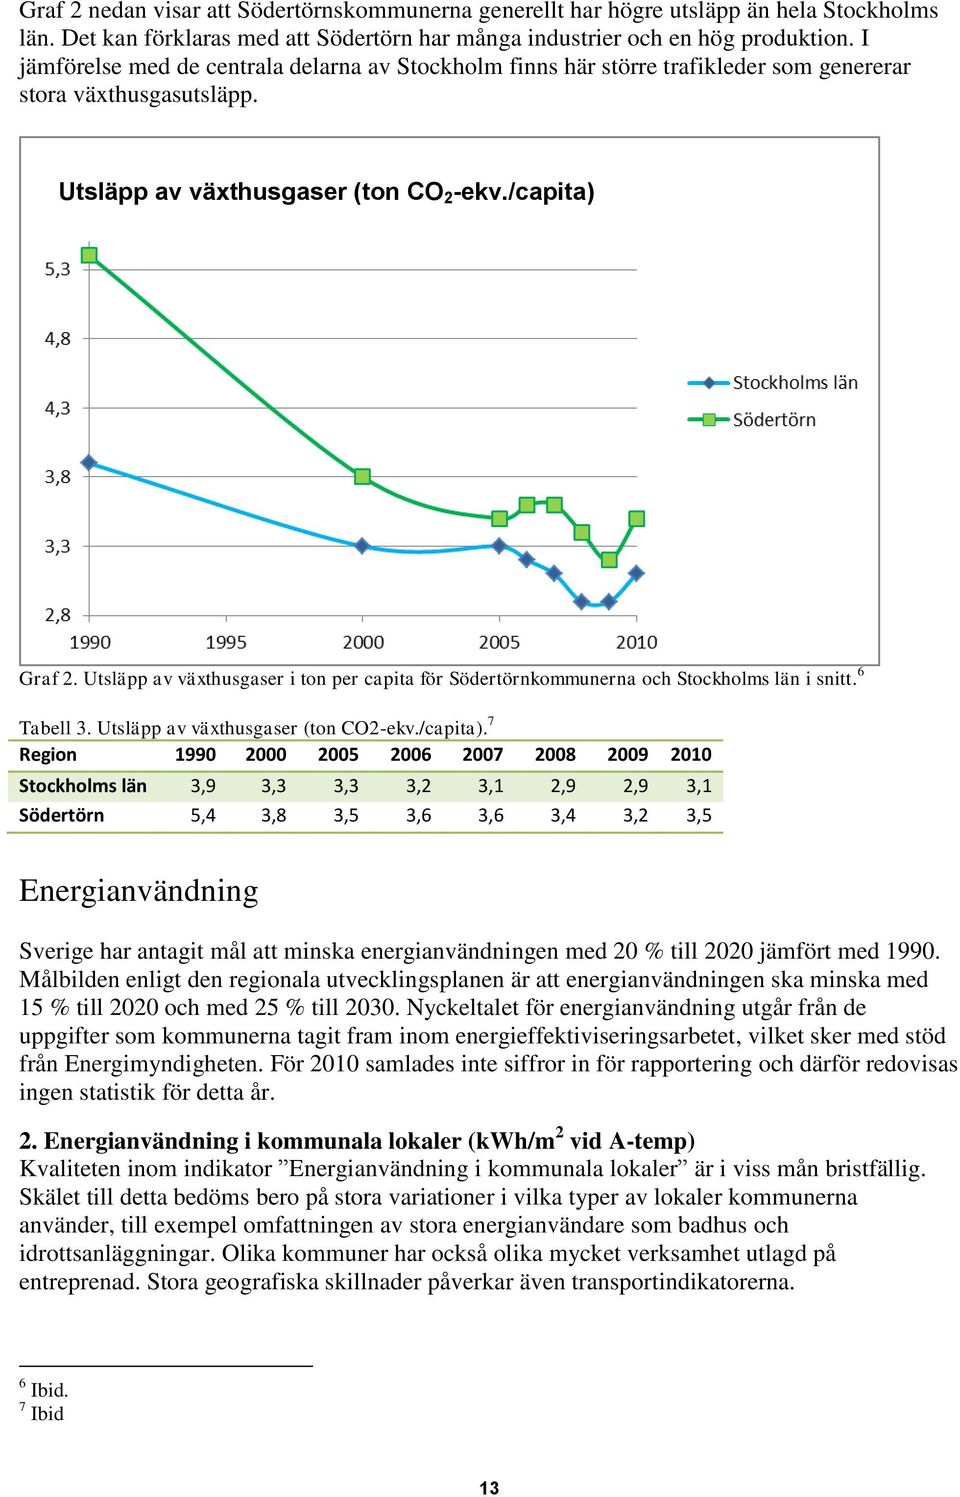 Utsläpp av växthusgaser i ton per capita för Södertörnkommunerna och Stockholms län i snitt. 6 Tabell 3. Utsläpp av växthusgaser (ton CO2-ekv./capita).